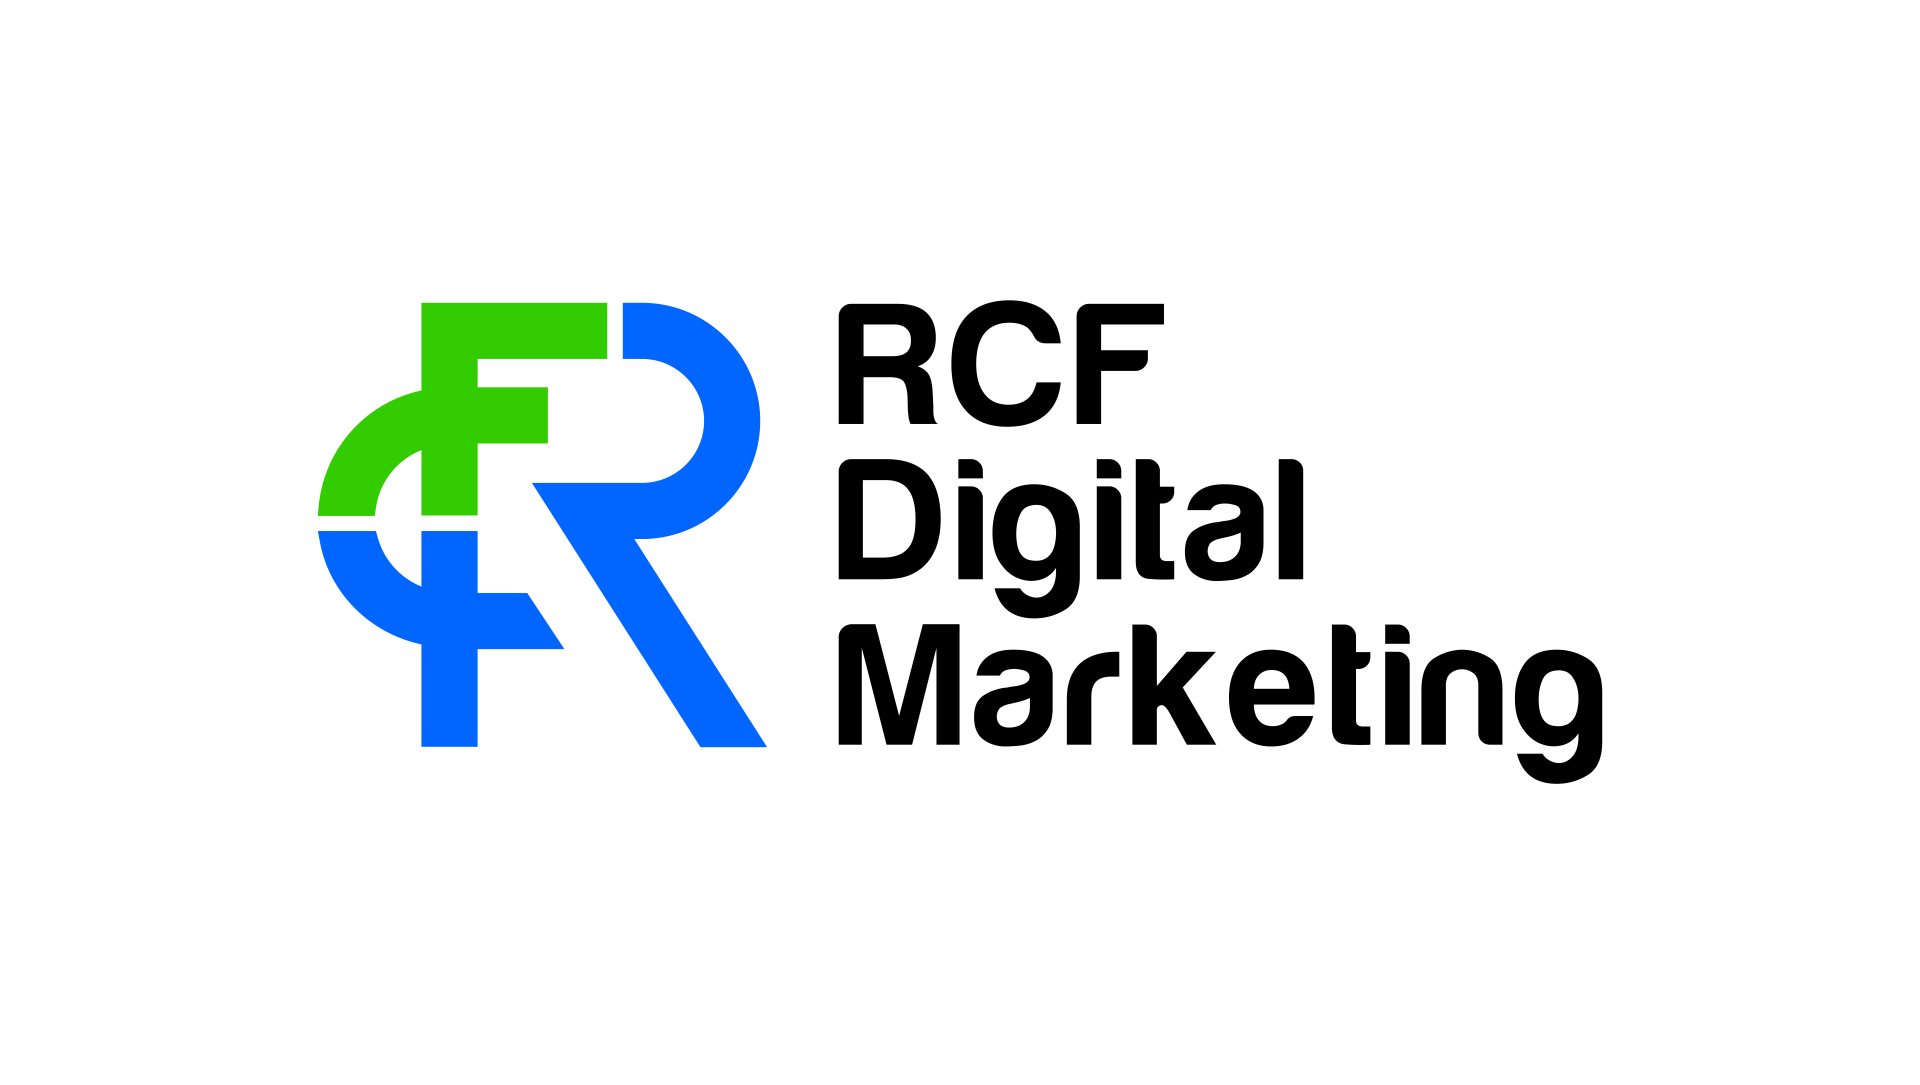 RCF Digital Marketing